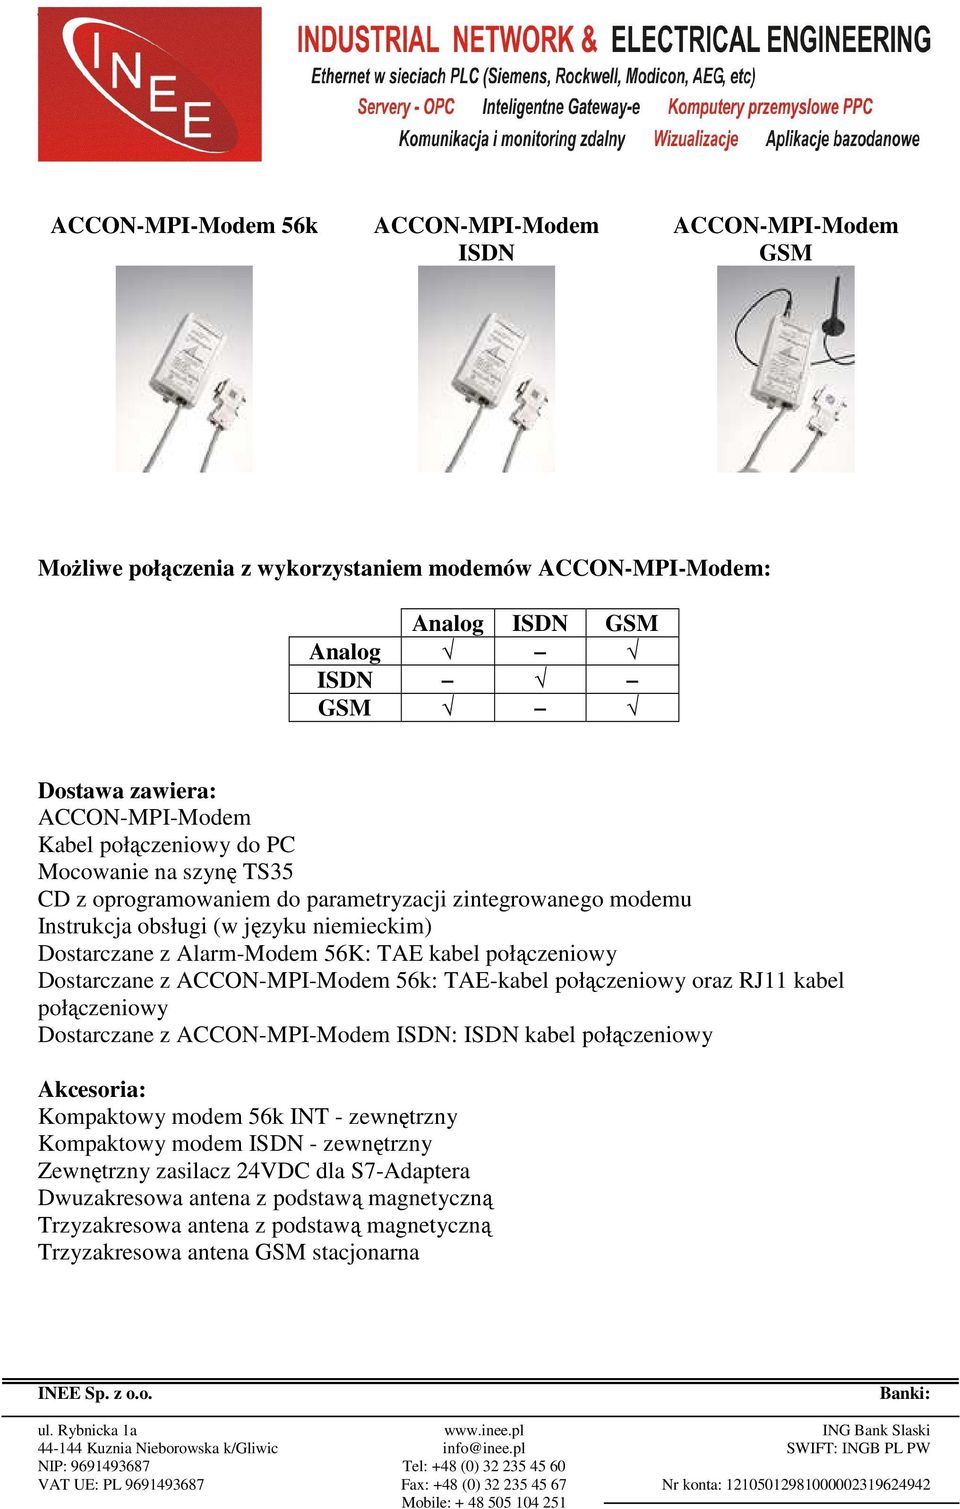 połączeniowy Dostarczane z ACCON-MPI-Modem 56k: TAE-kabel połączeniowy oraz RJ11 kabel połączeniowy Dostarczane z ACCON-MPI-Modem ISDN: ISDN kabel połączeniowy Akcesoria: Kompaktowy modem 56k INT